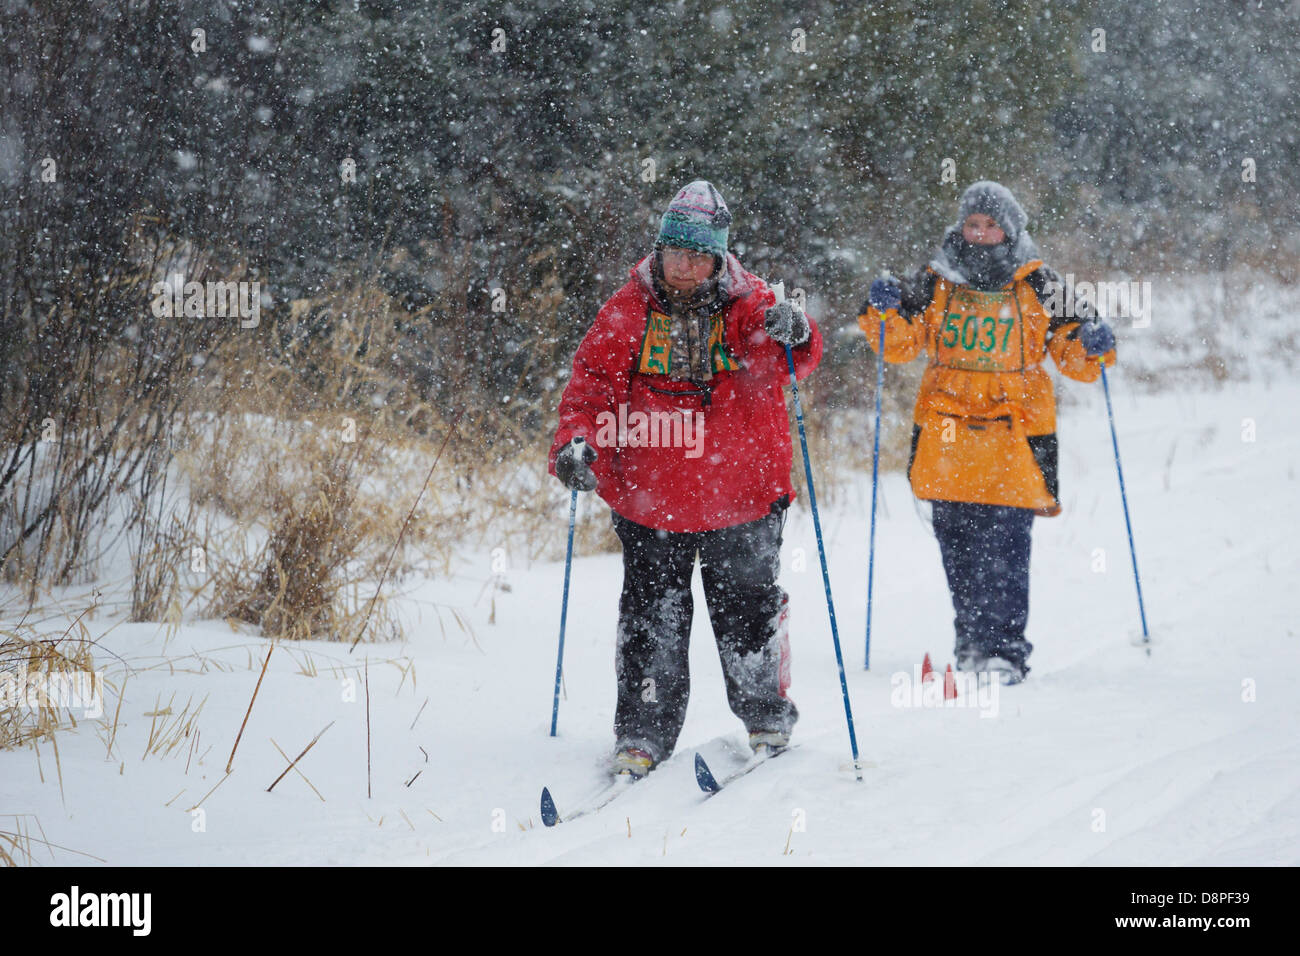 Dos esquiadores esquían en la Mora Vasaloppet durante una tormenta de nieve el 10 de febrero de 2013 cerca de Mora, Minnesota. Foto de stock